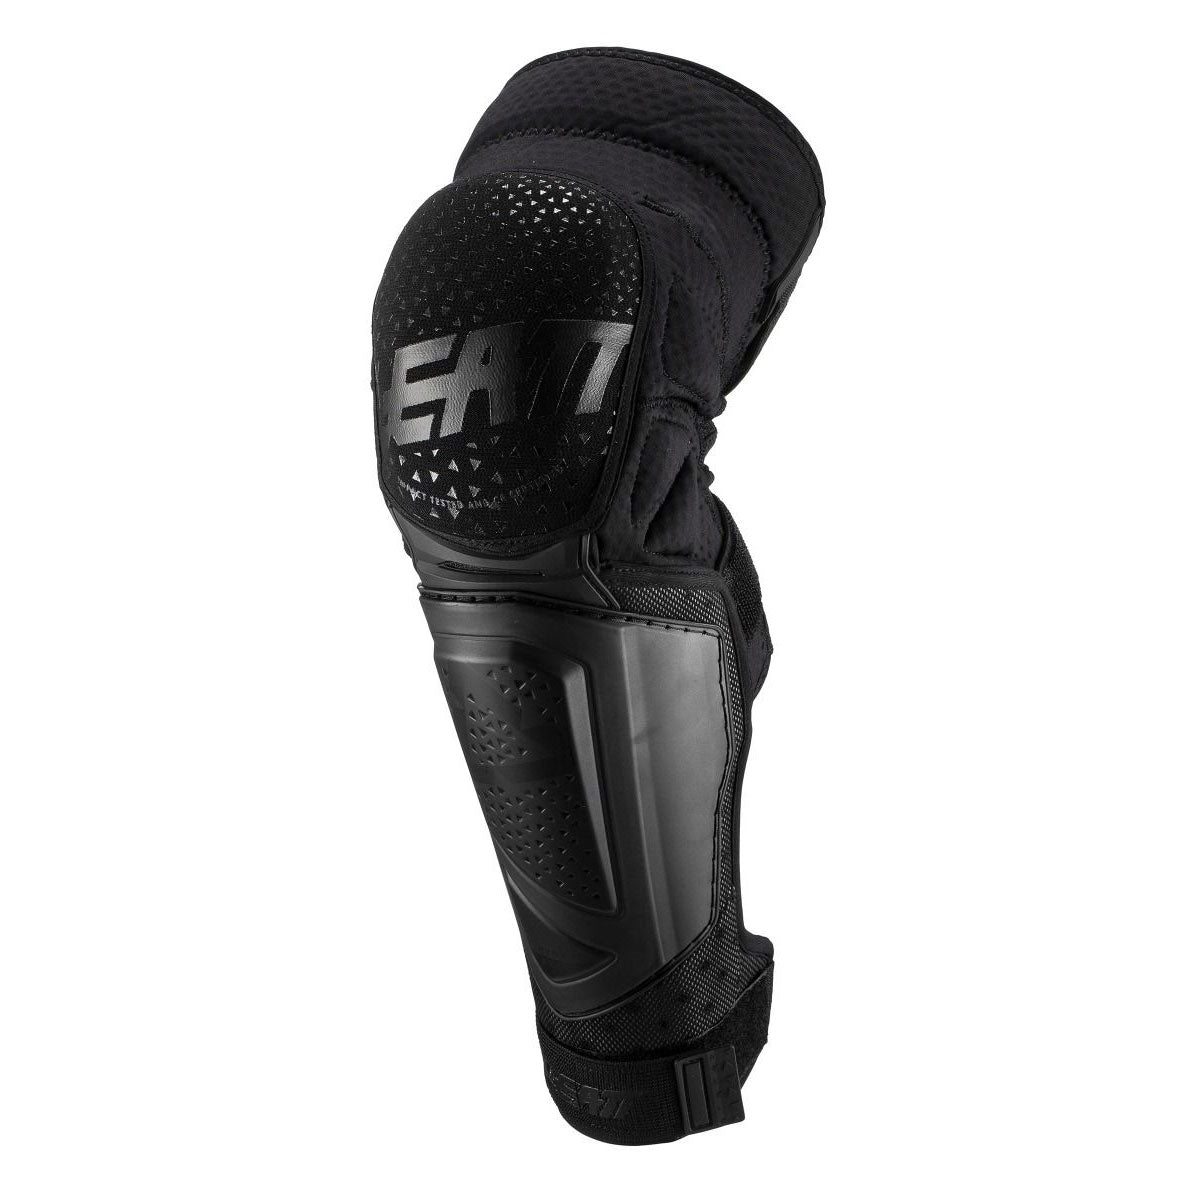 Leatt 3DF Hybrid EXT Knee/Shin Guard Small/Medium Black